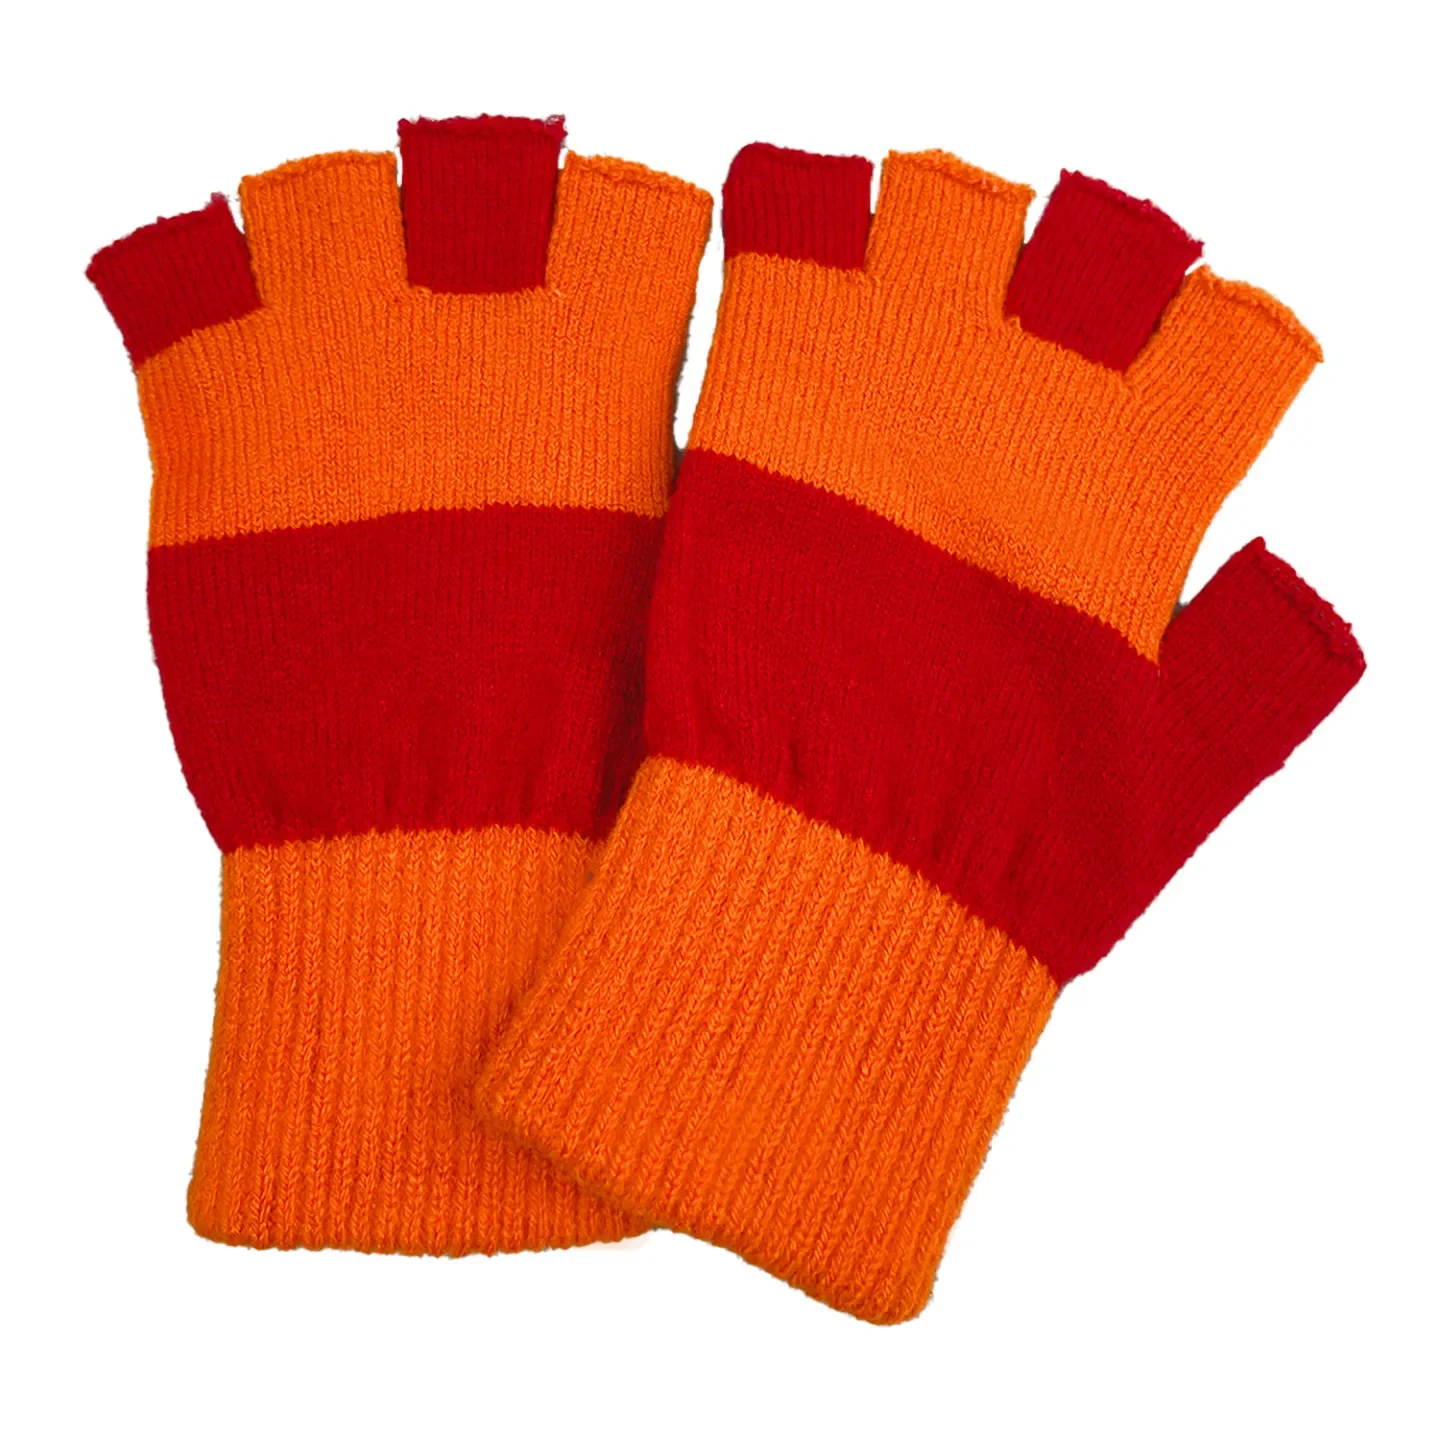 handschoenen kielegat oranje rood kopen.